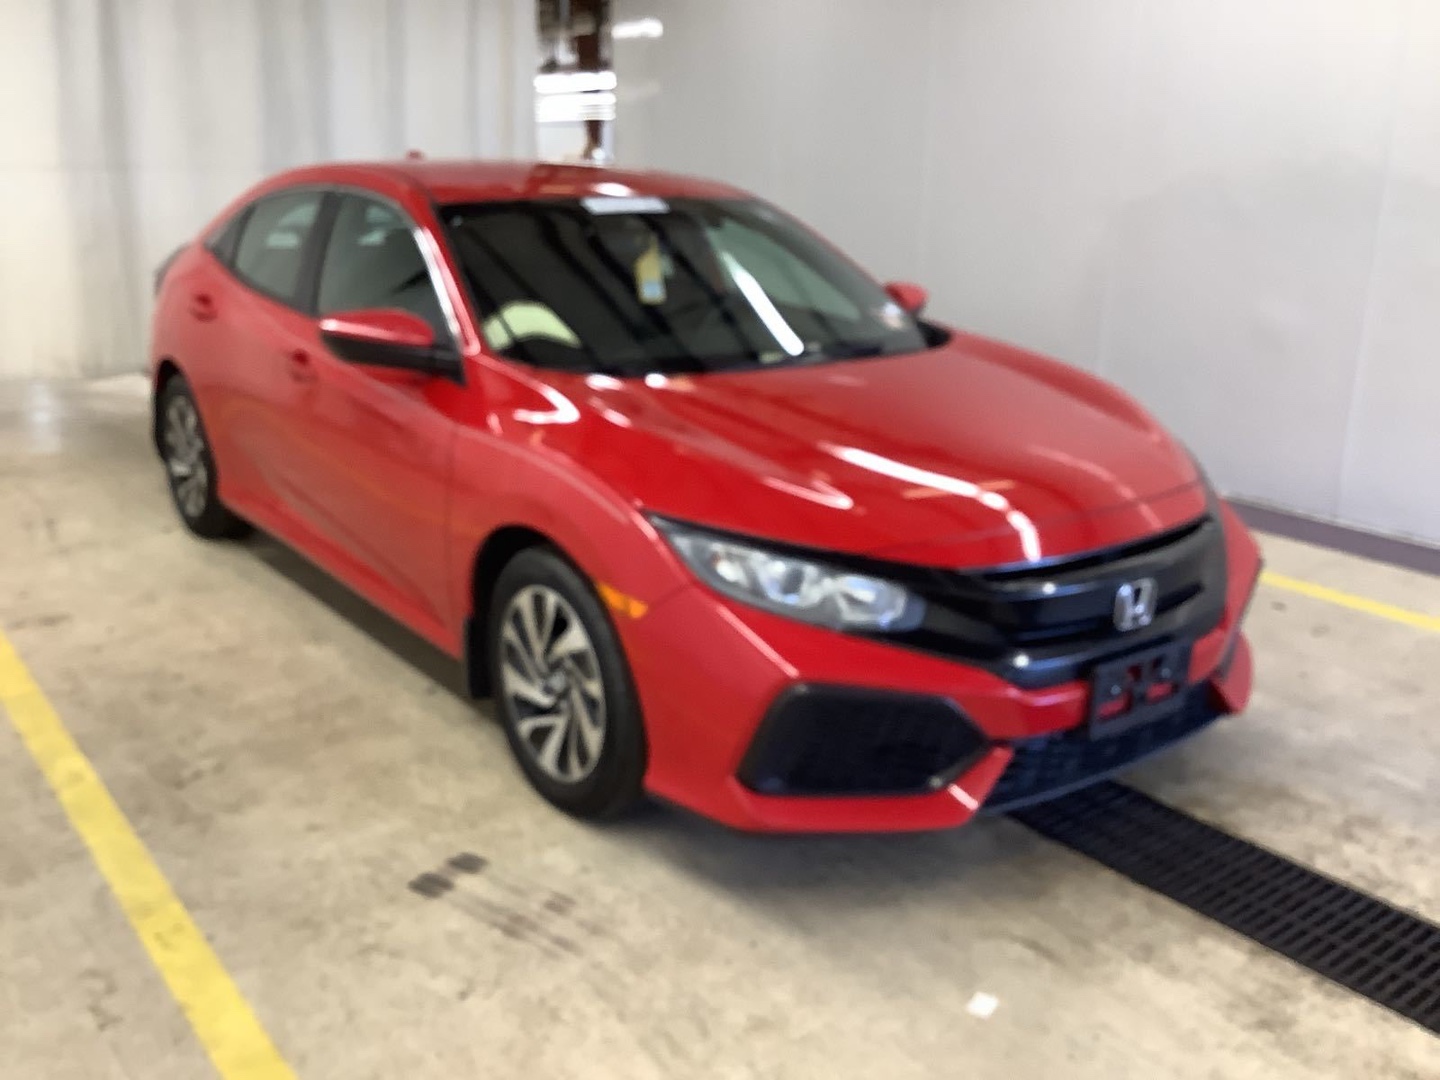 carros - Honda Civic 2019 Clean Carfax Recien importado 2